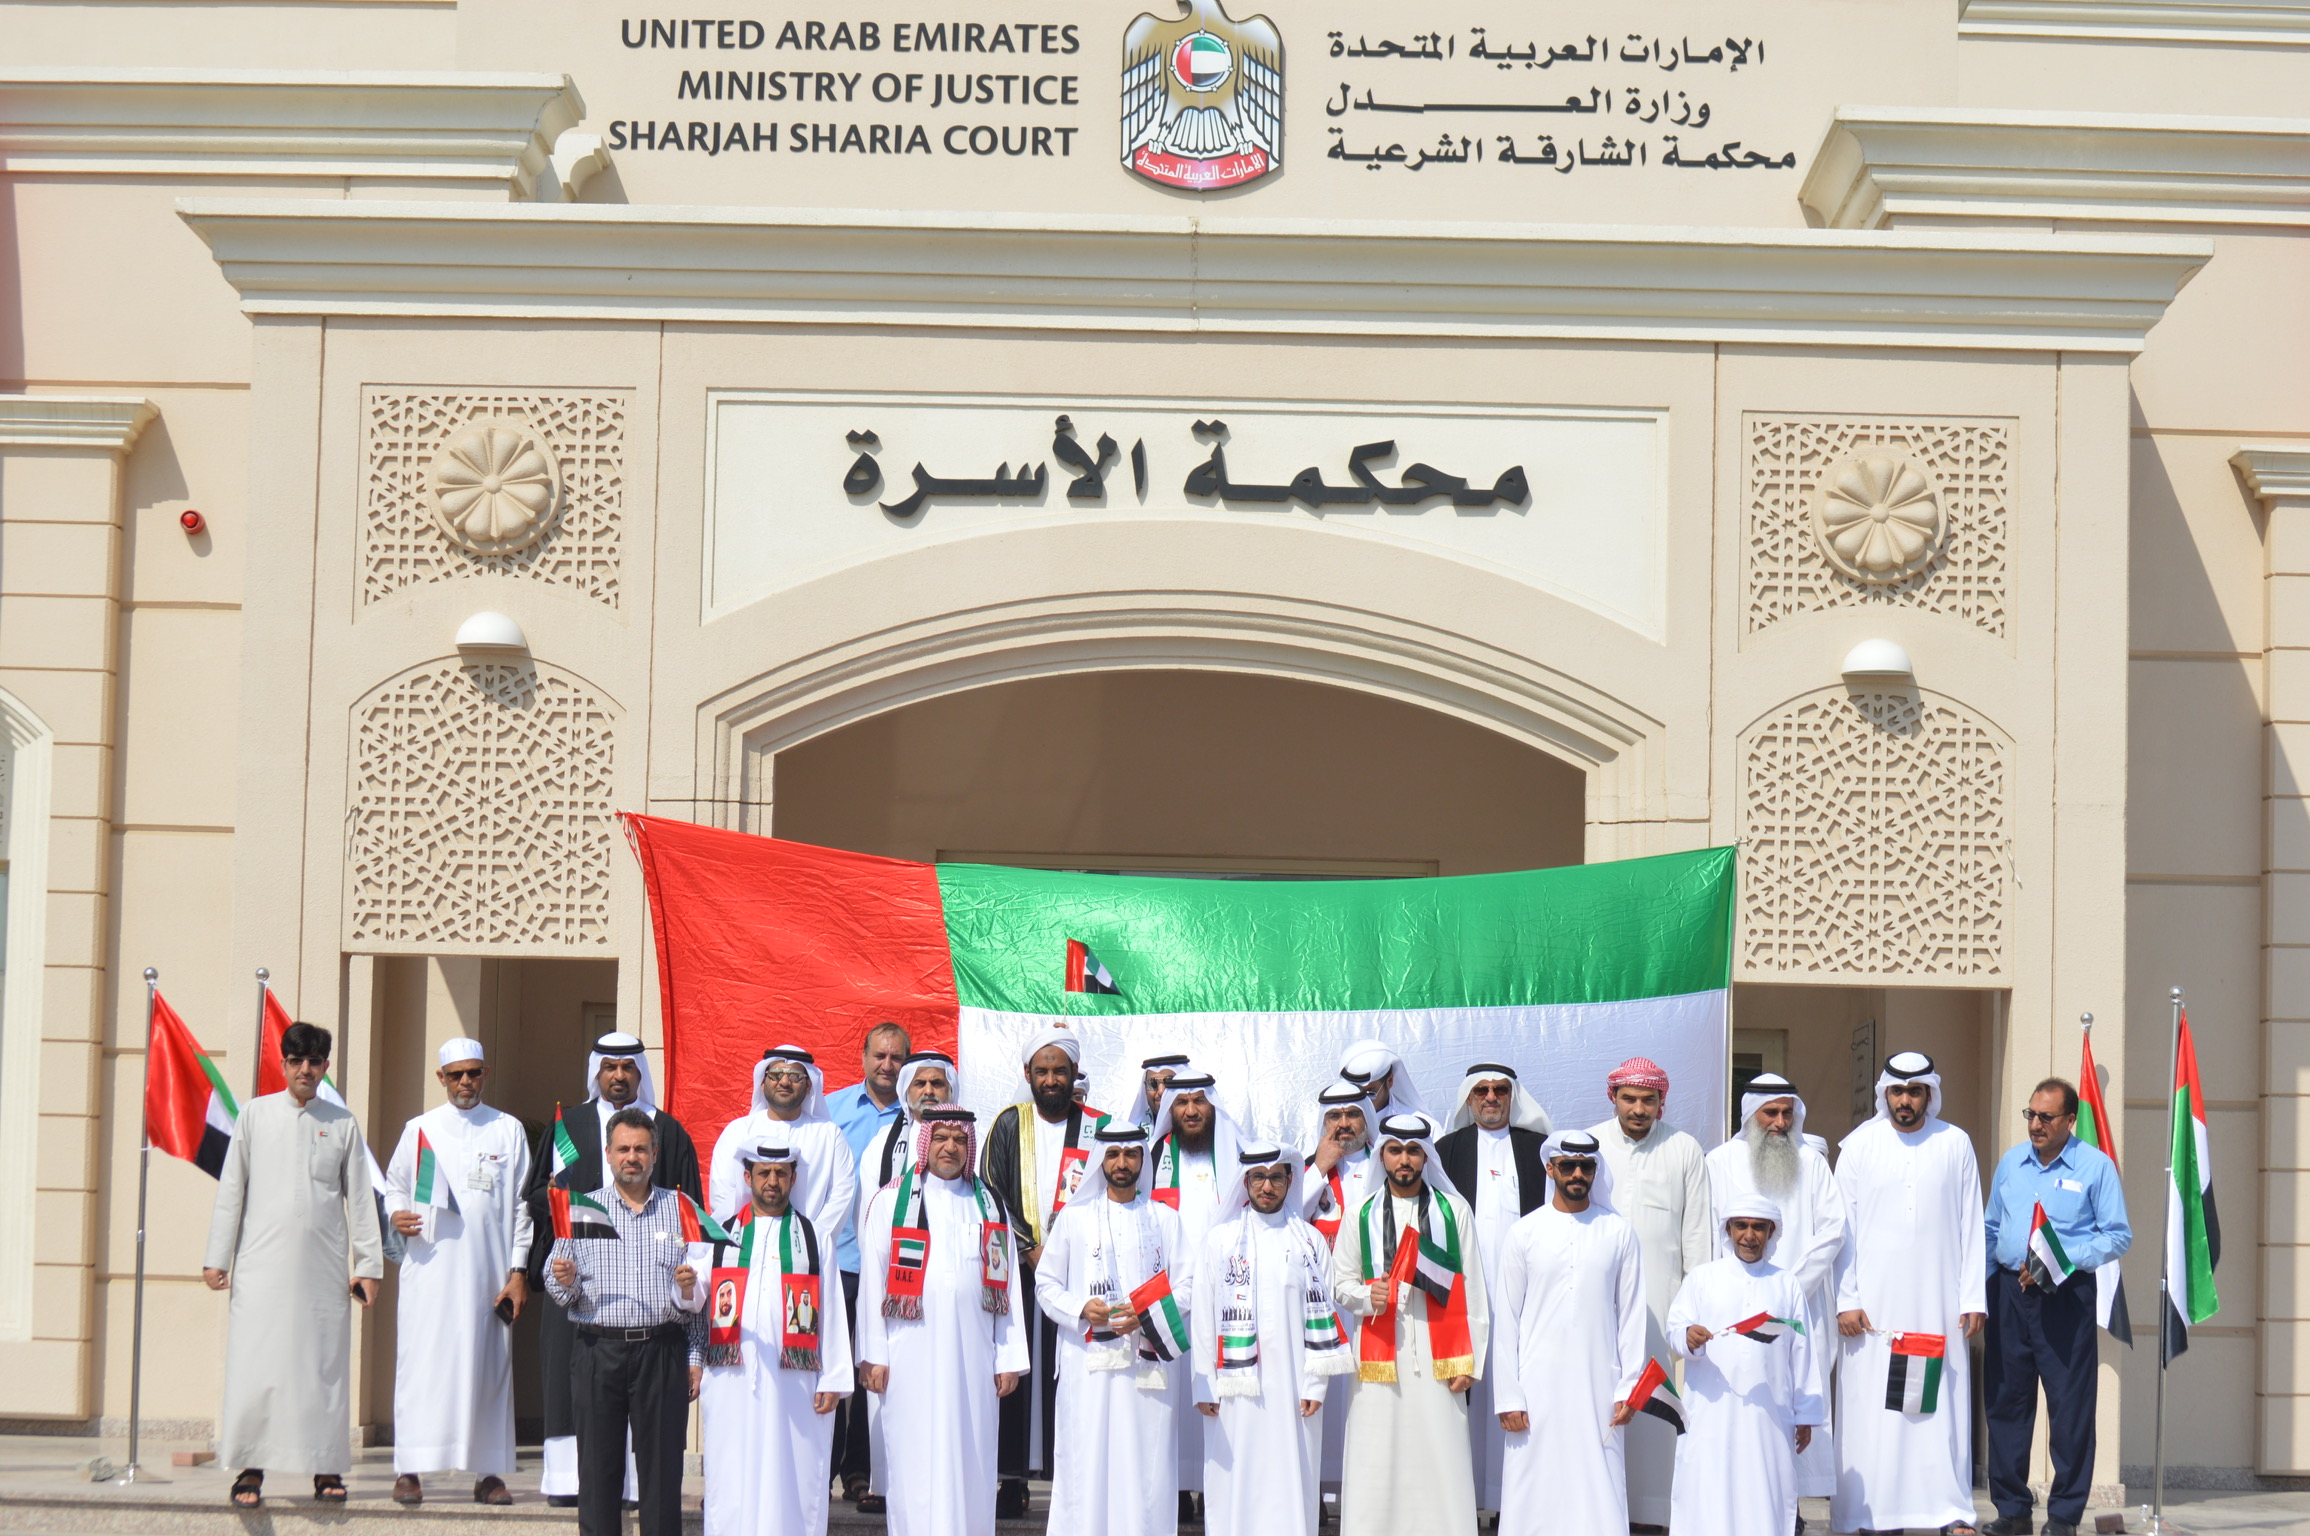 صورة تفاصيل قانون الزواج المدني الجديد في الإمارات